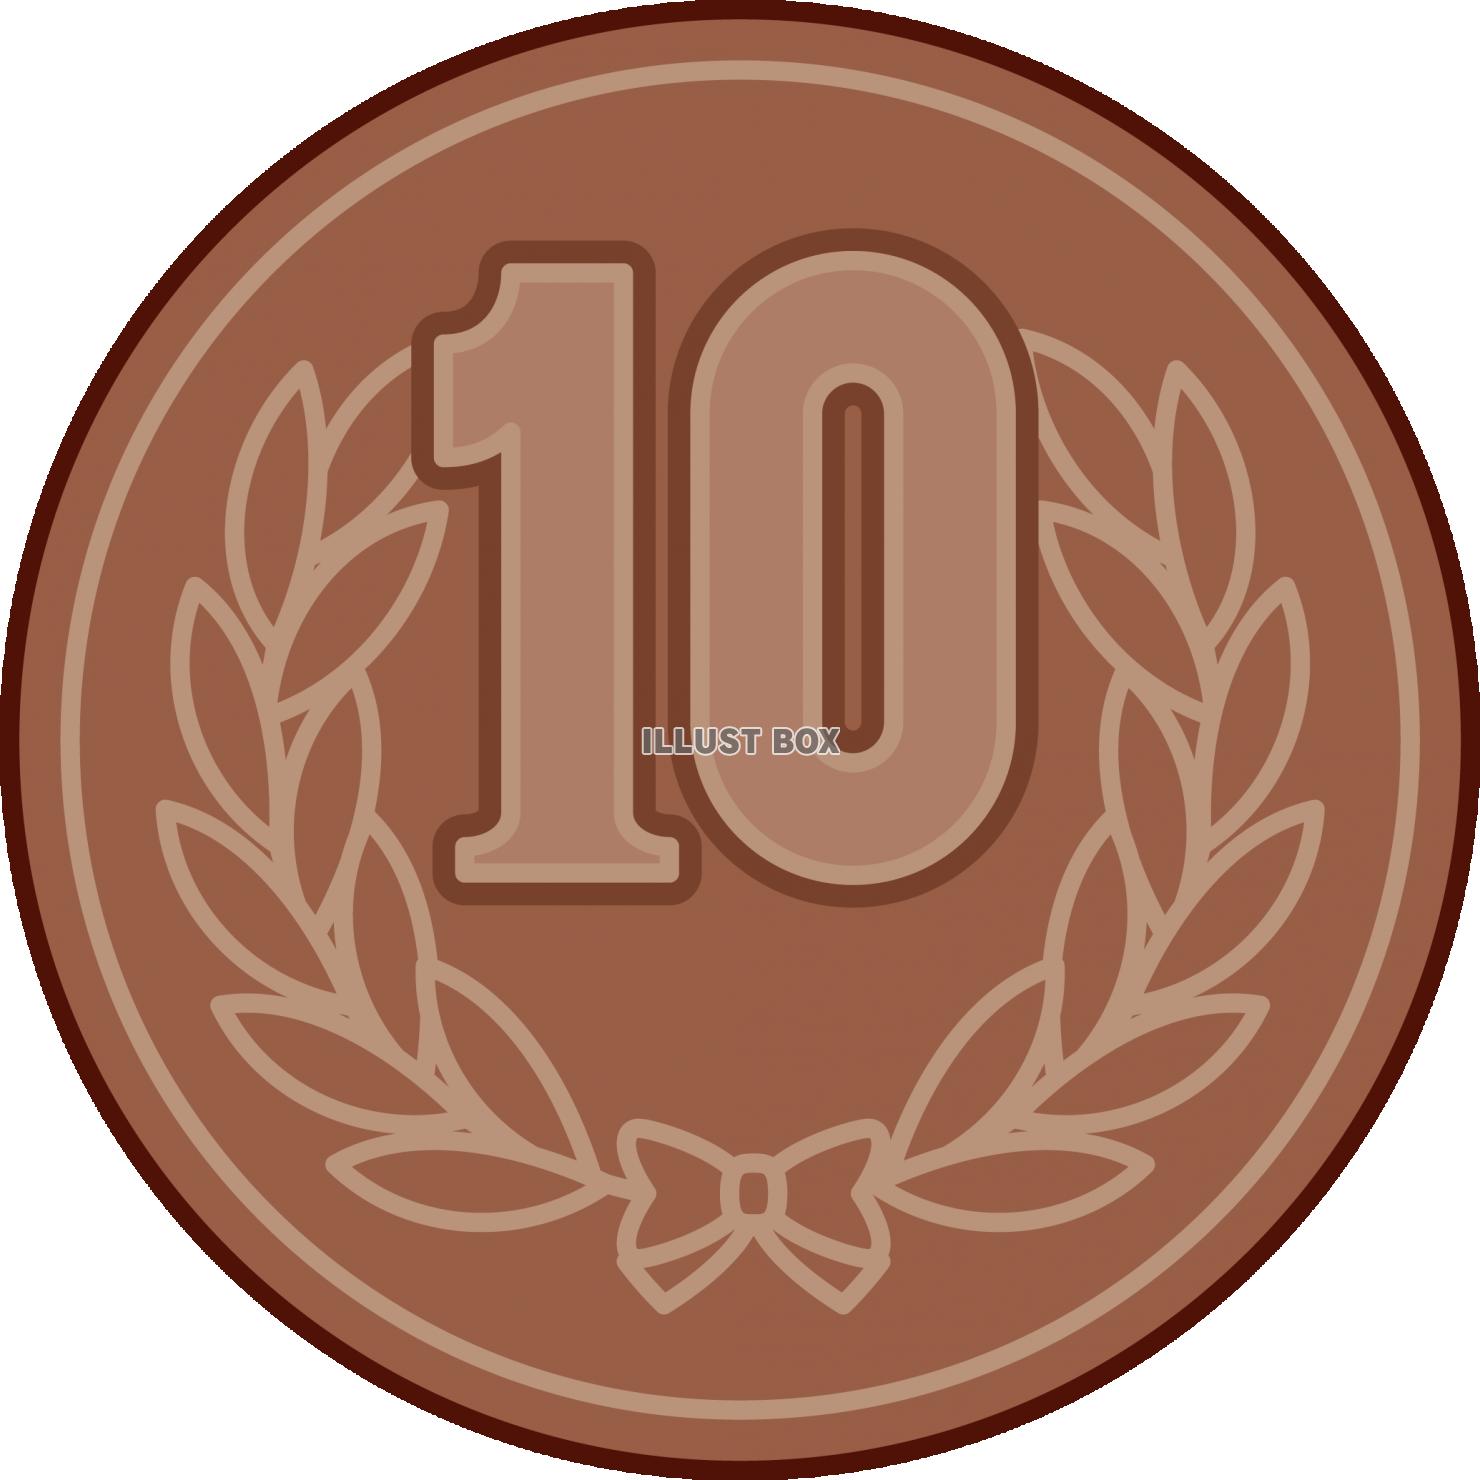 硬貨　十円玉